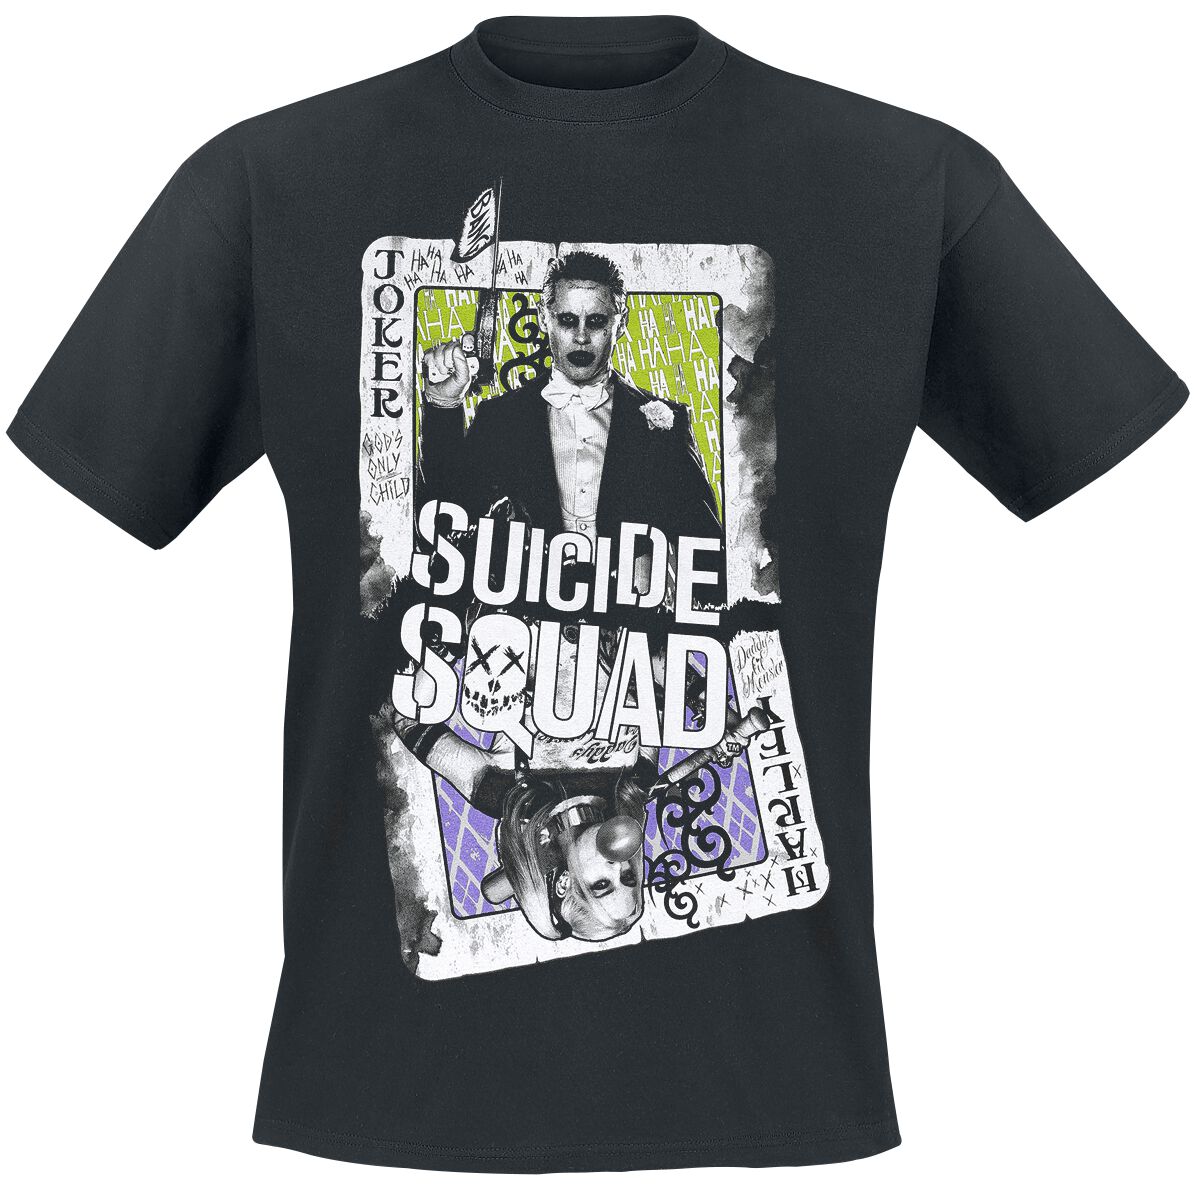 Suicide Squad Cards T-Shirt black